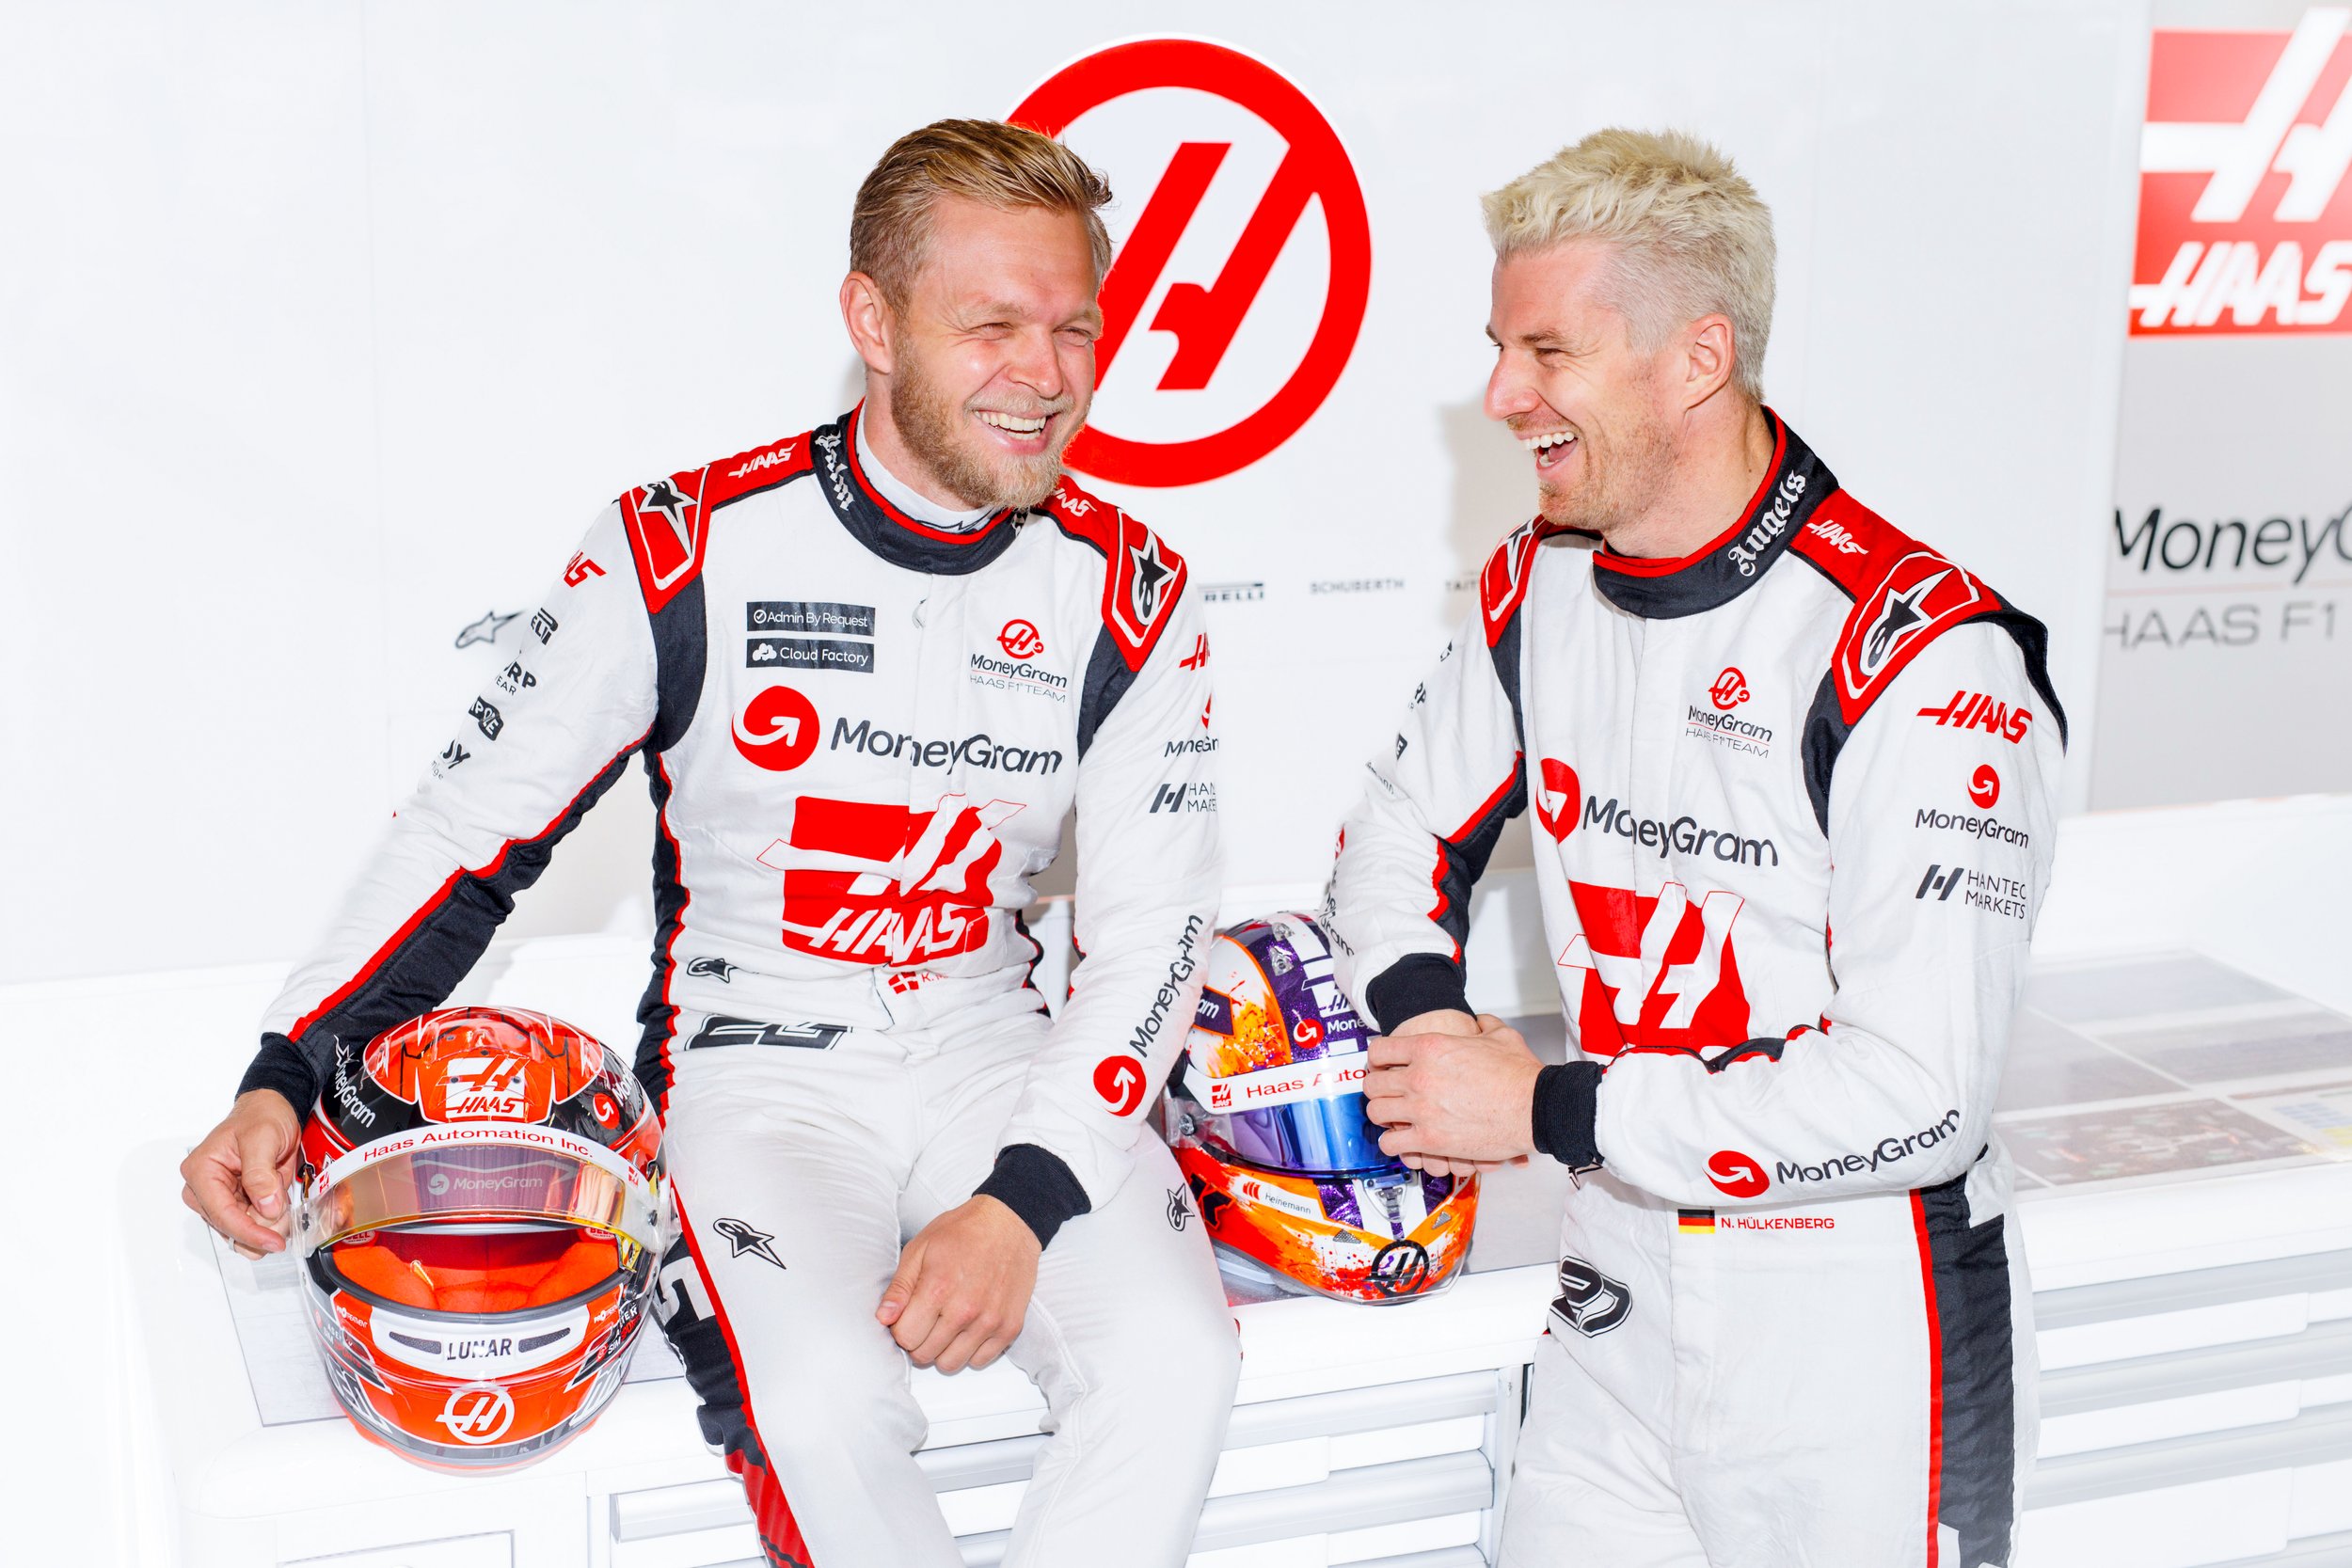 Haas F1: Magnussen and Hulkenberg honor Steiner